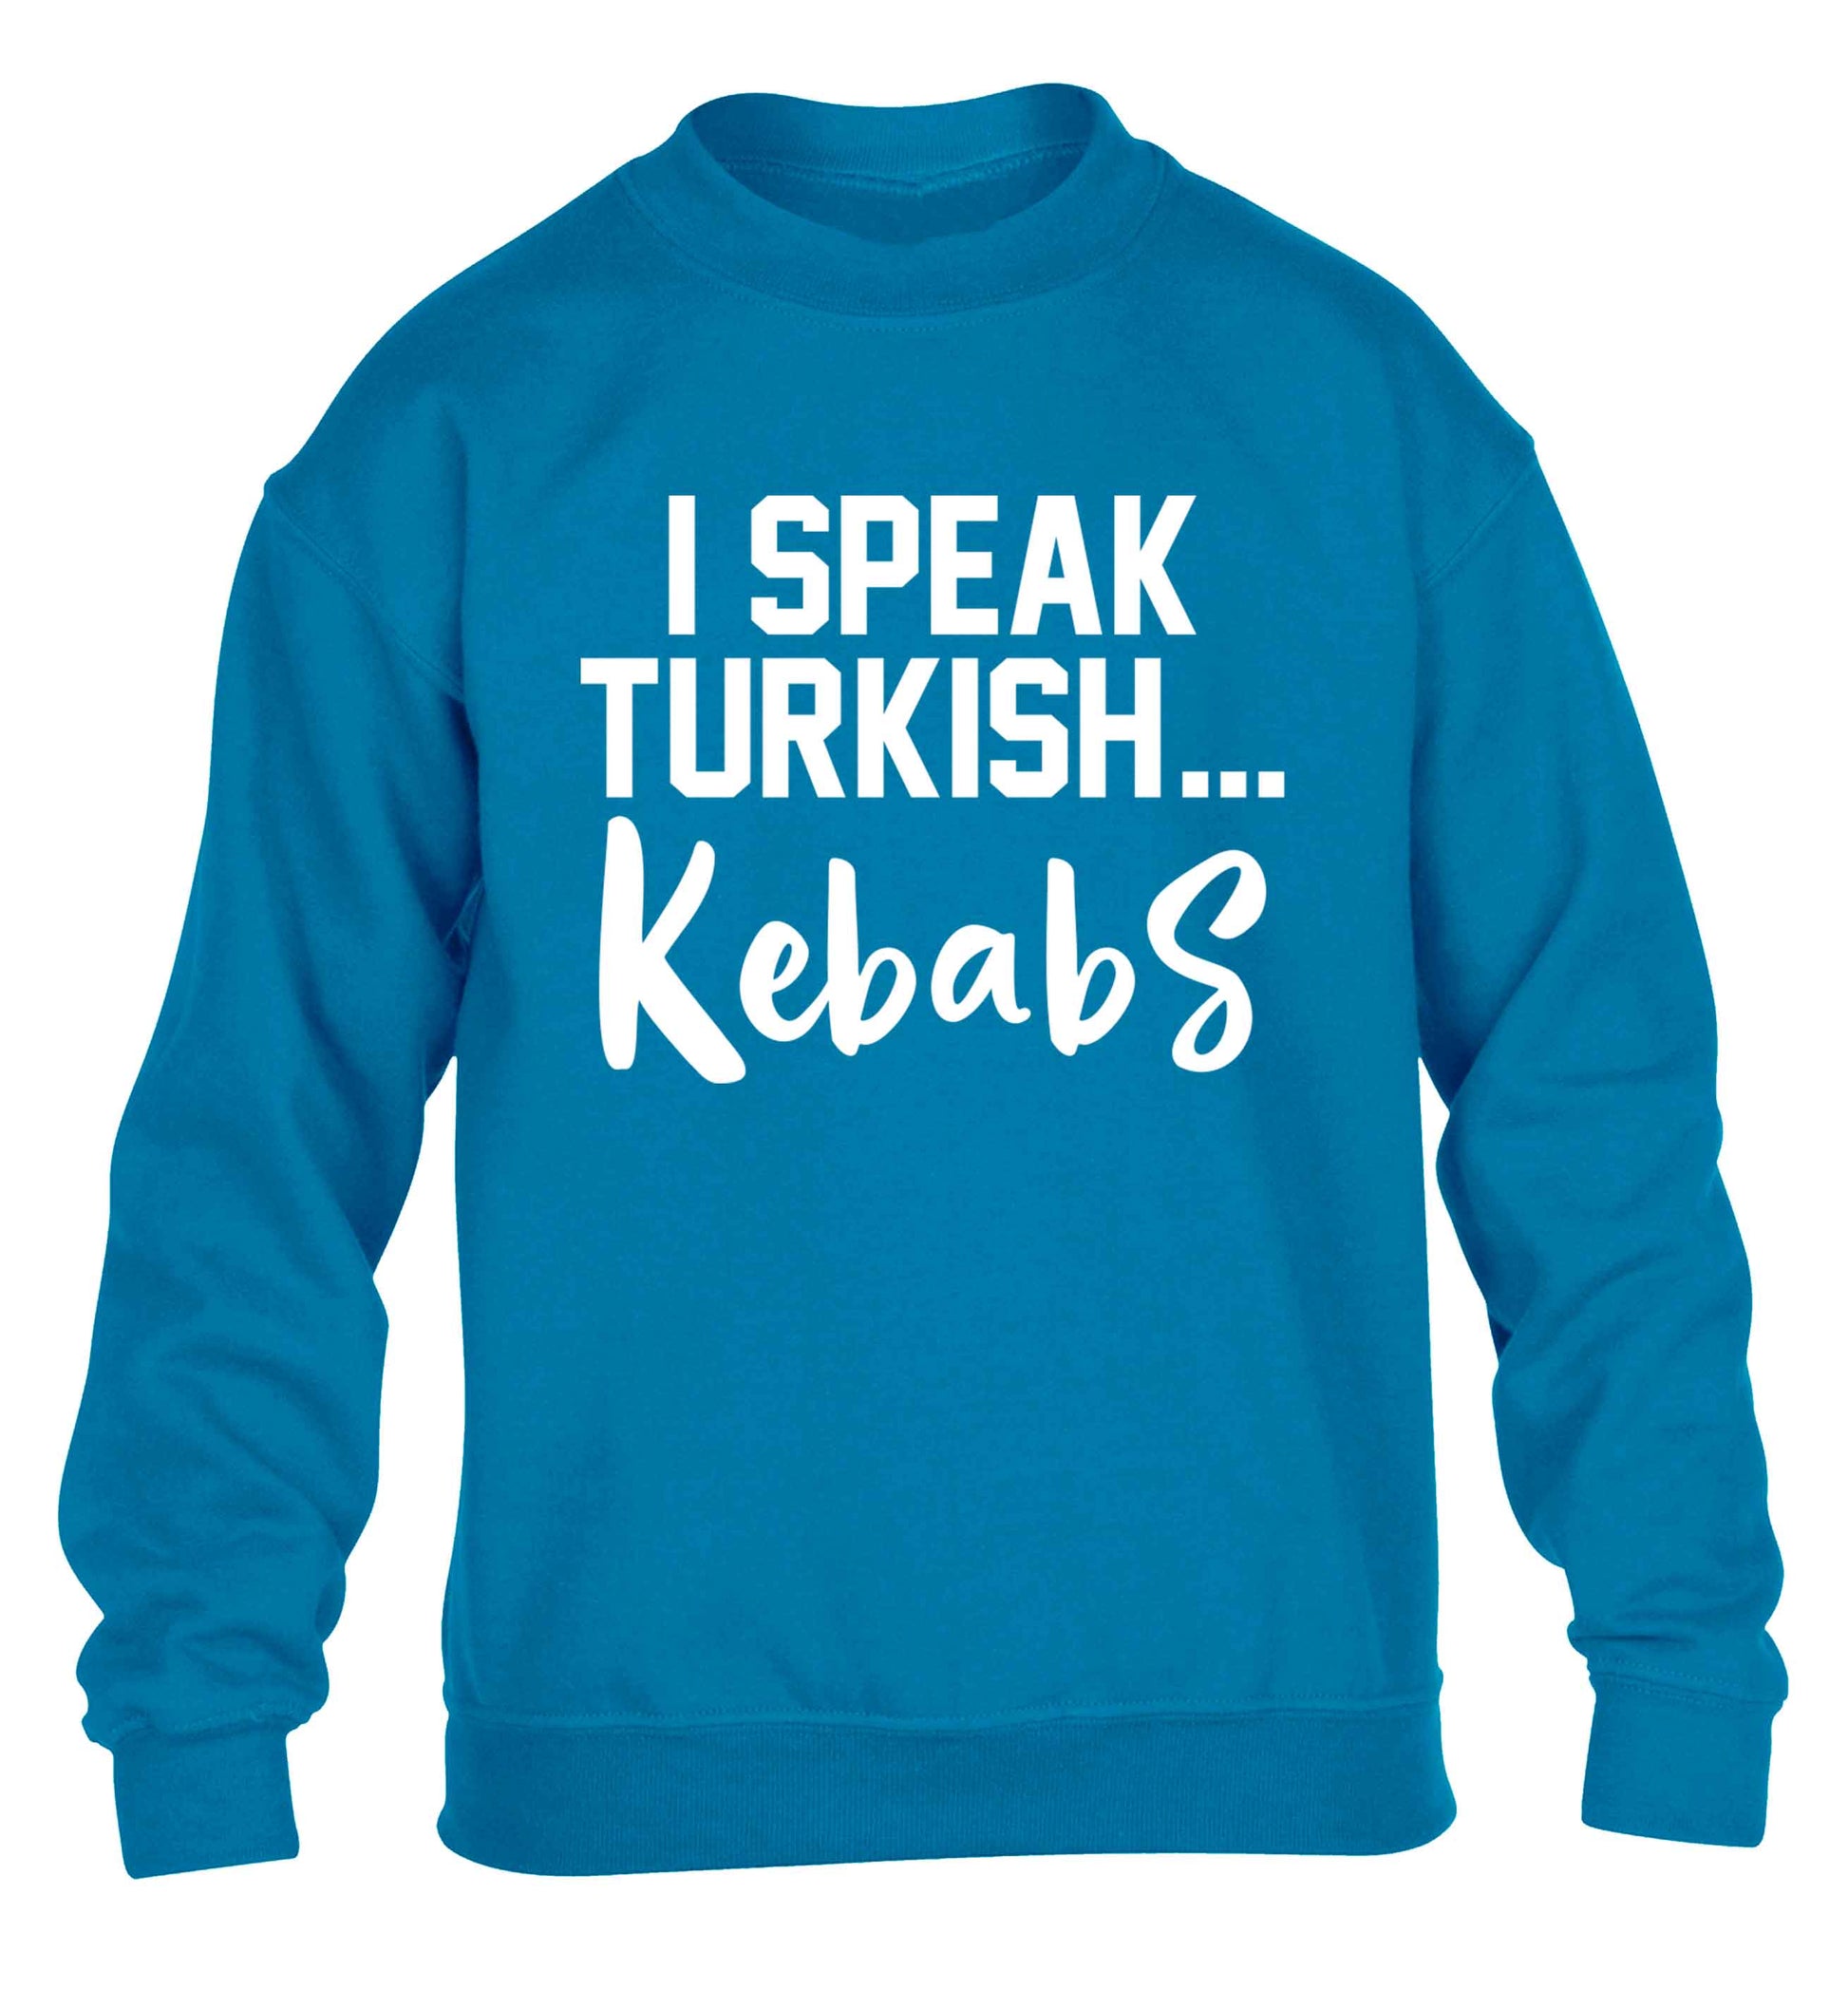 I speak Turkish...kebabs children's blue sweater 12-13 Years